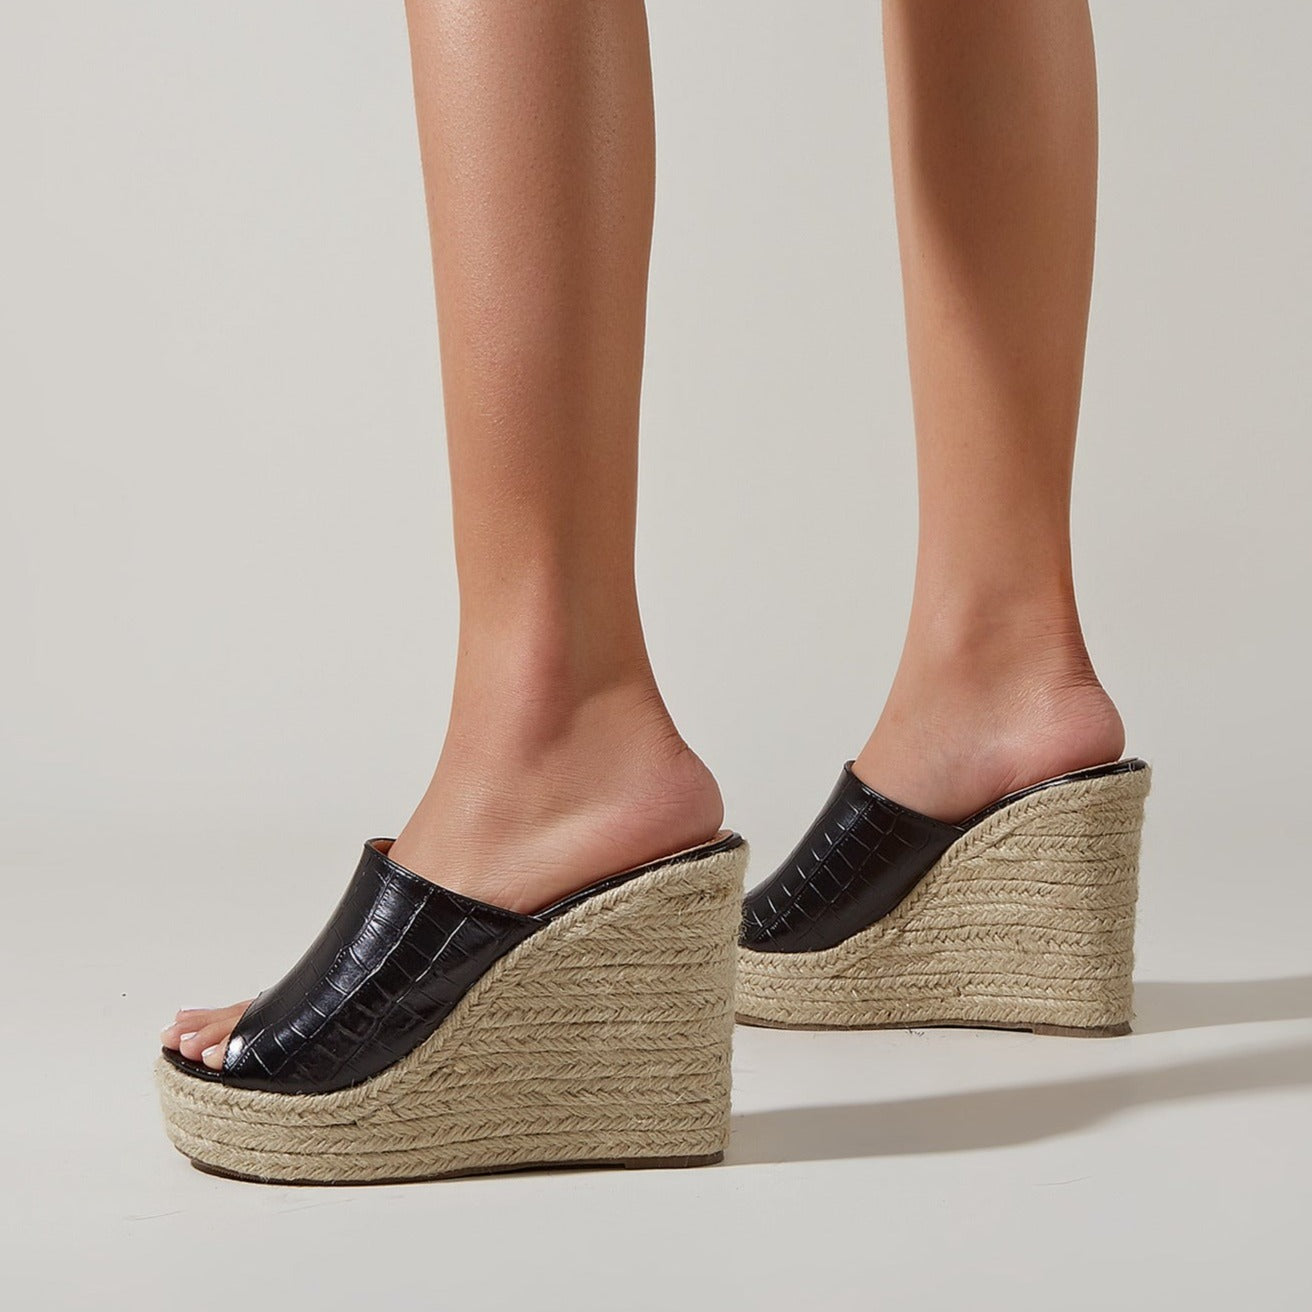 Women's peep to espadrille wedge heels mules summer slip on wedge slippers